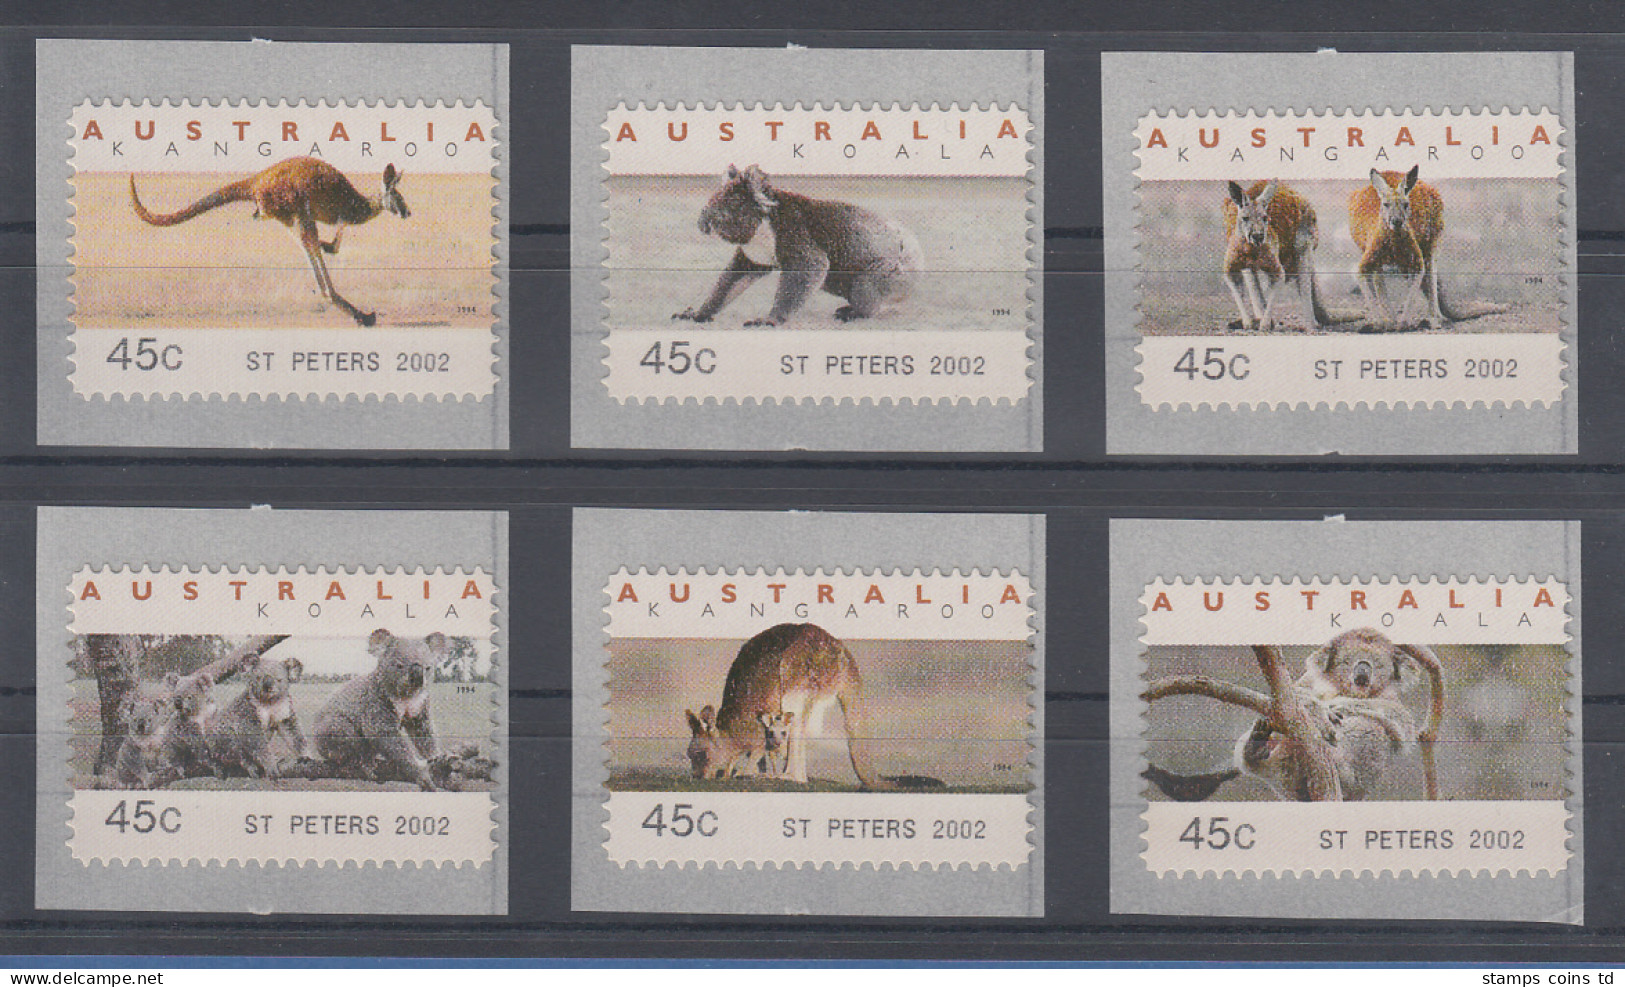 Australien Tritech-ATM Kangaroo / Koala 6 Motive Kpl. ST. PETERS 2002 - Vignette [ATM]